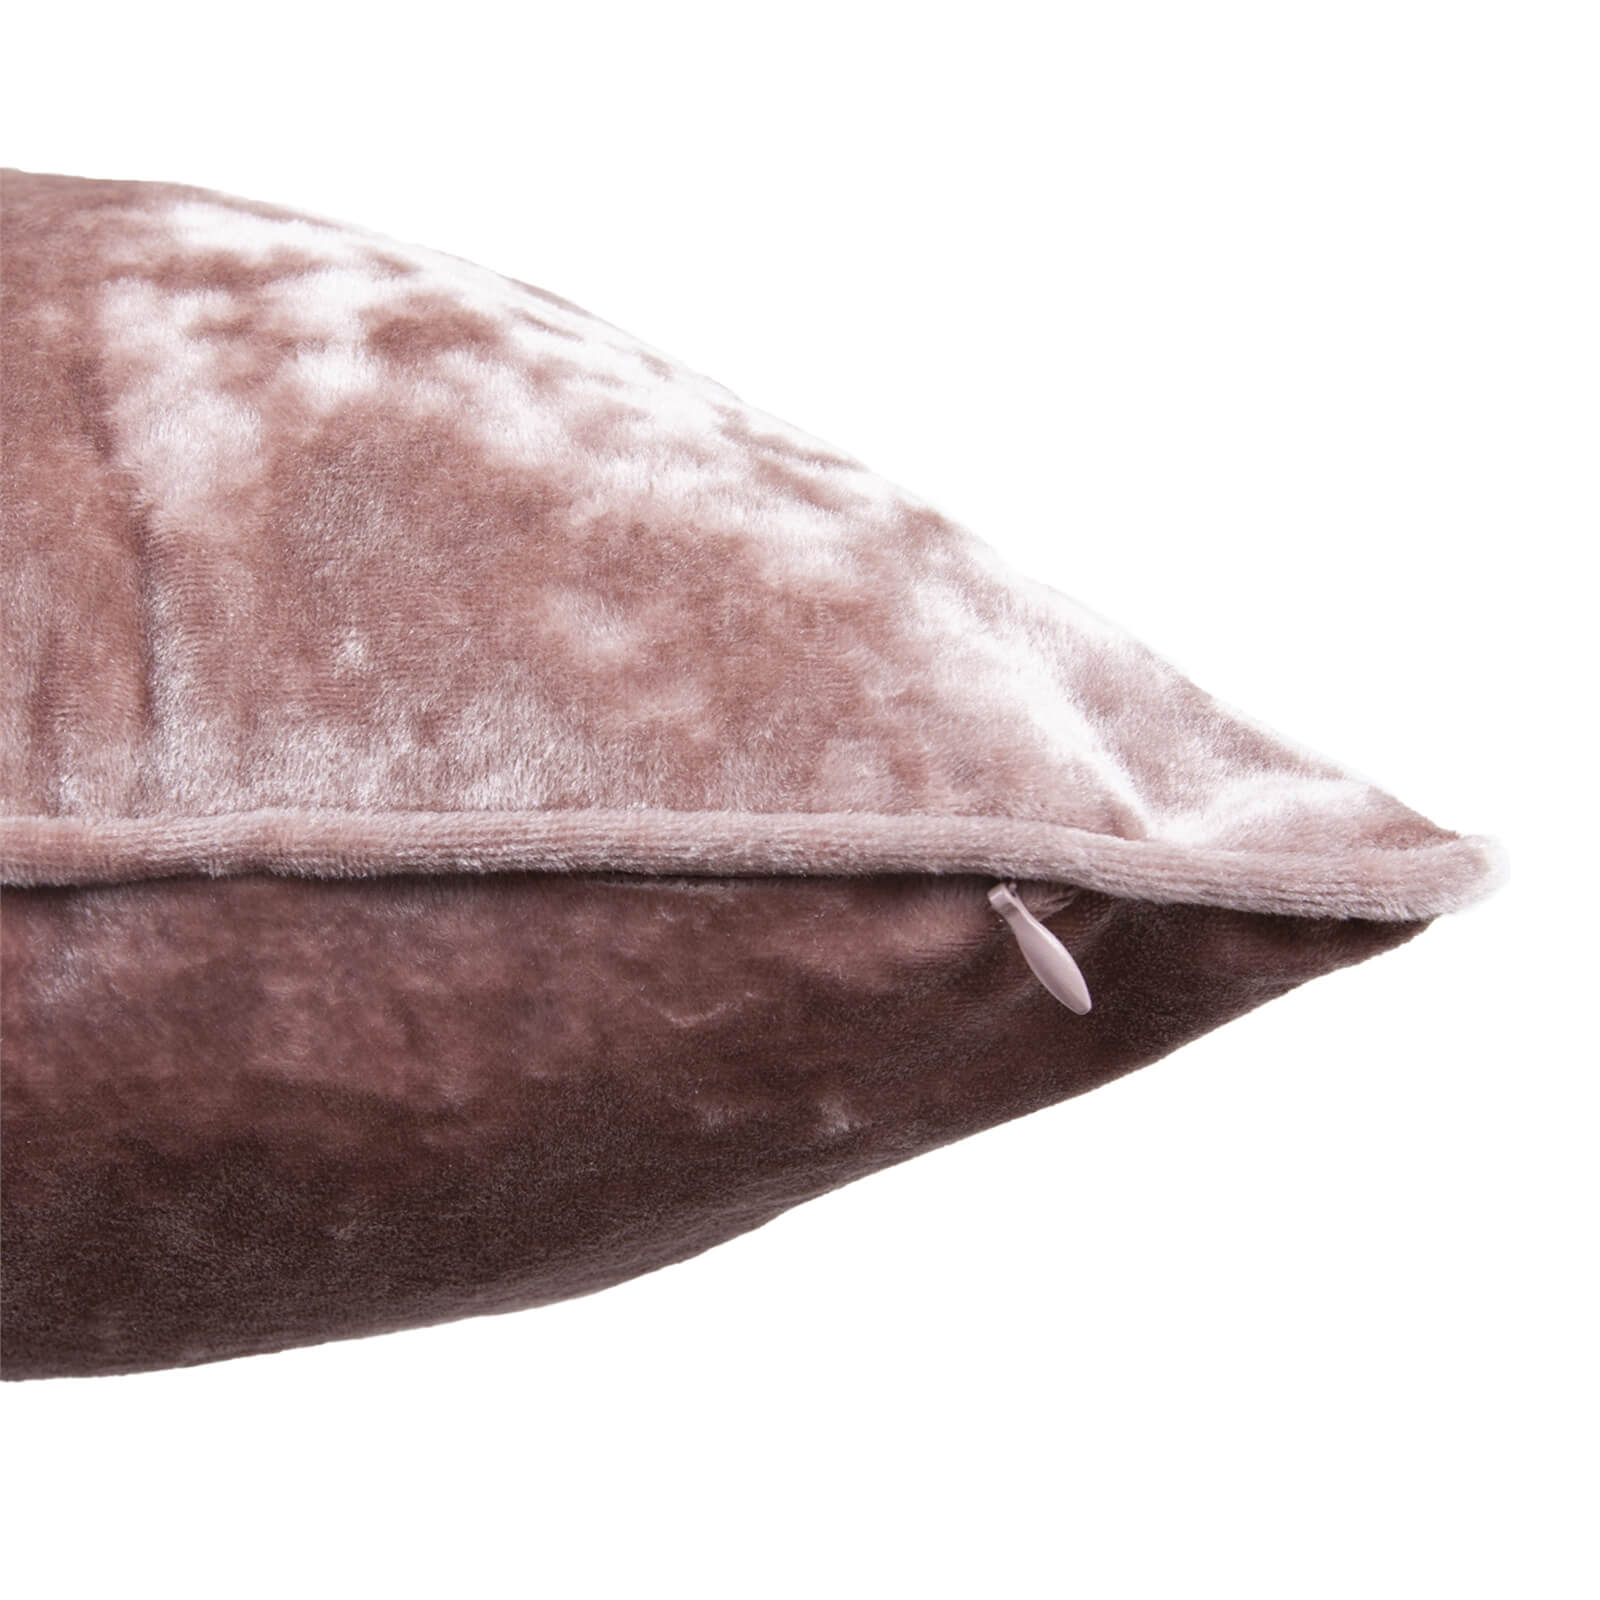 Large Crushed Velvet Cushion - Blush - 58x58cm